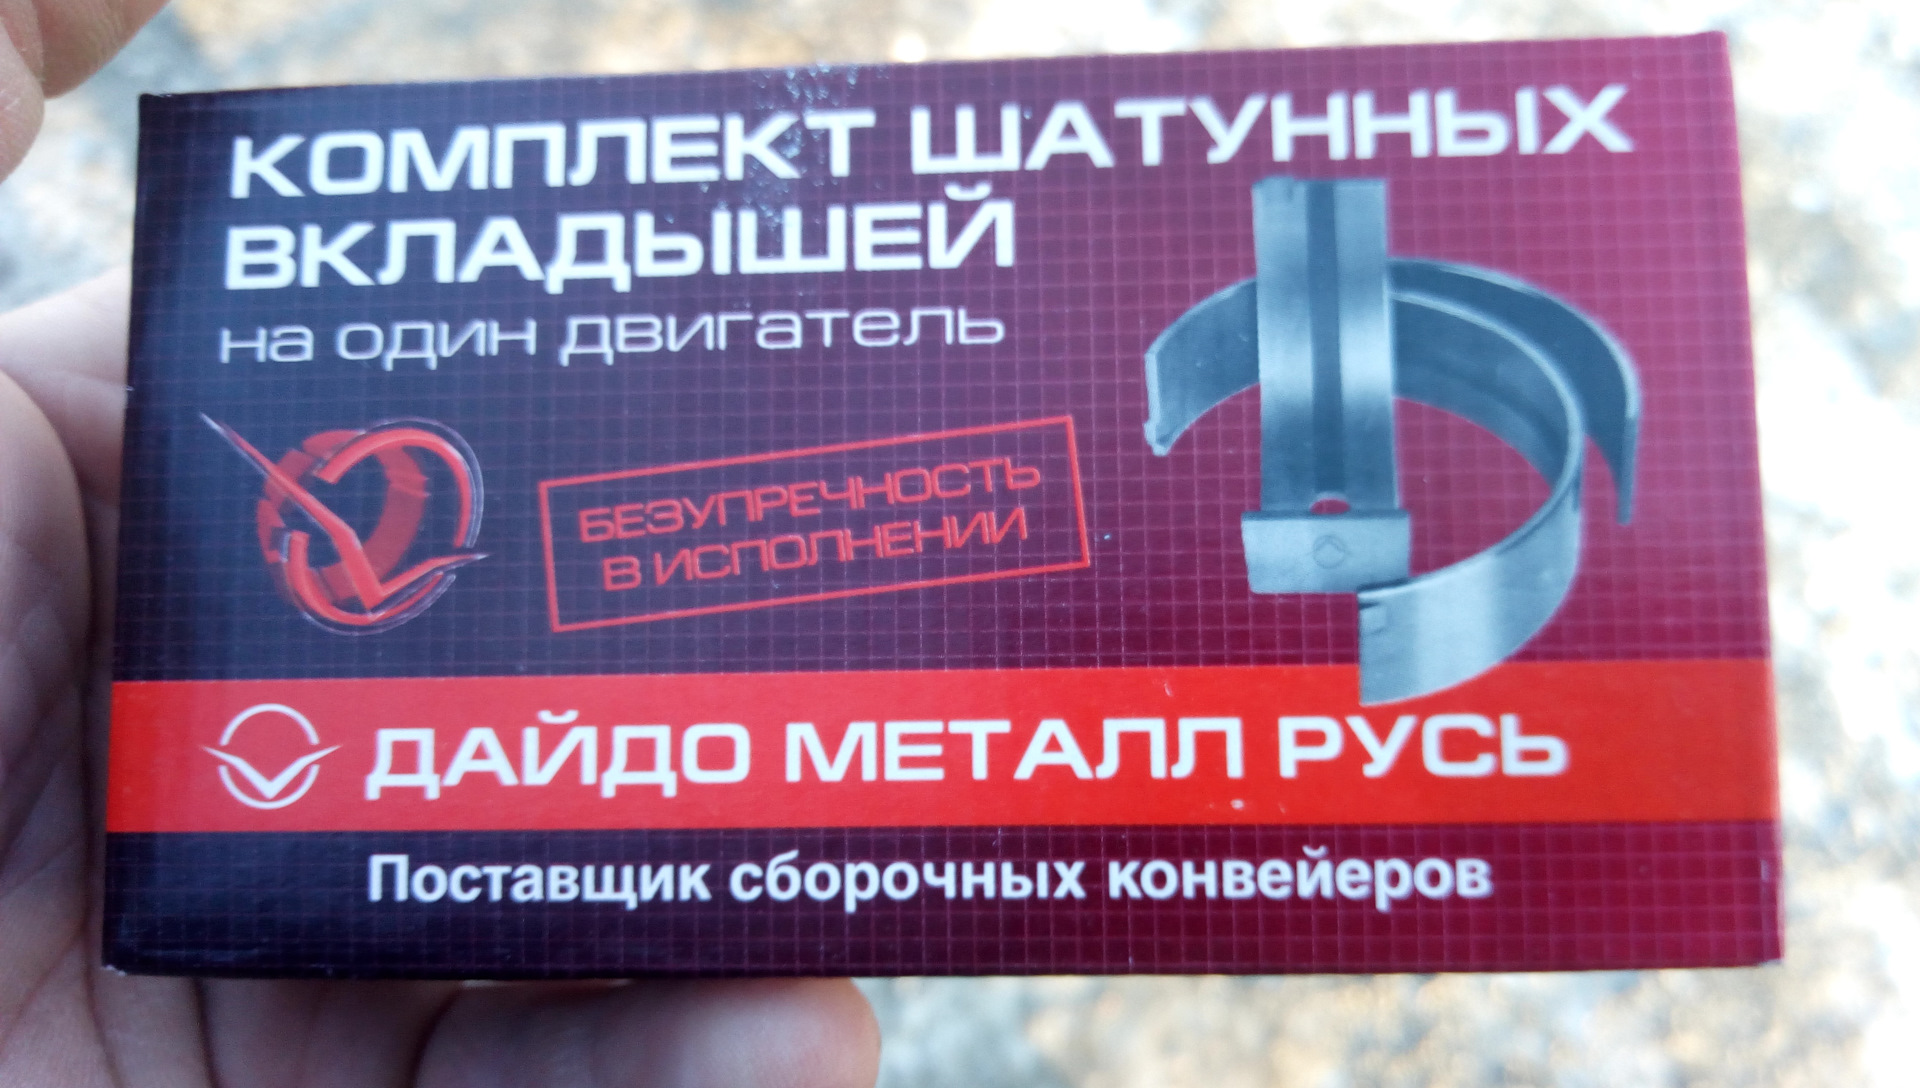 Вкладыши дайдо. Daido вкладыши. Дайдо металл Русь вкладыши в Киеве. Как выглядят неподдельные вкладыши Дайдо металл шатунные.